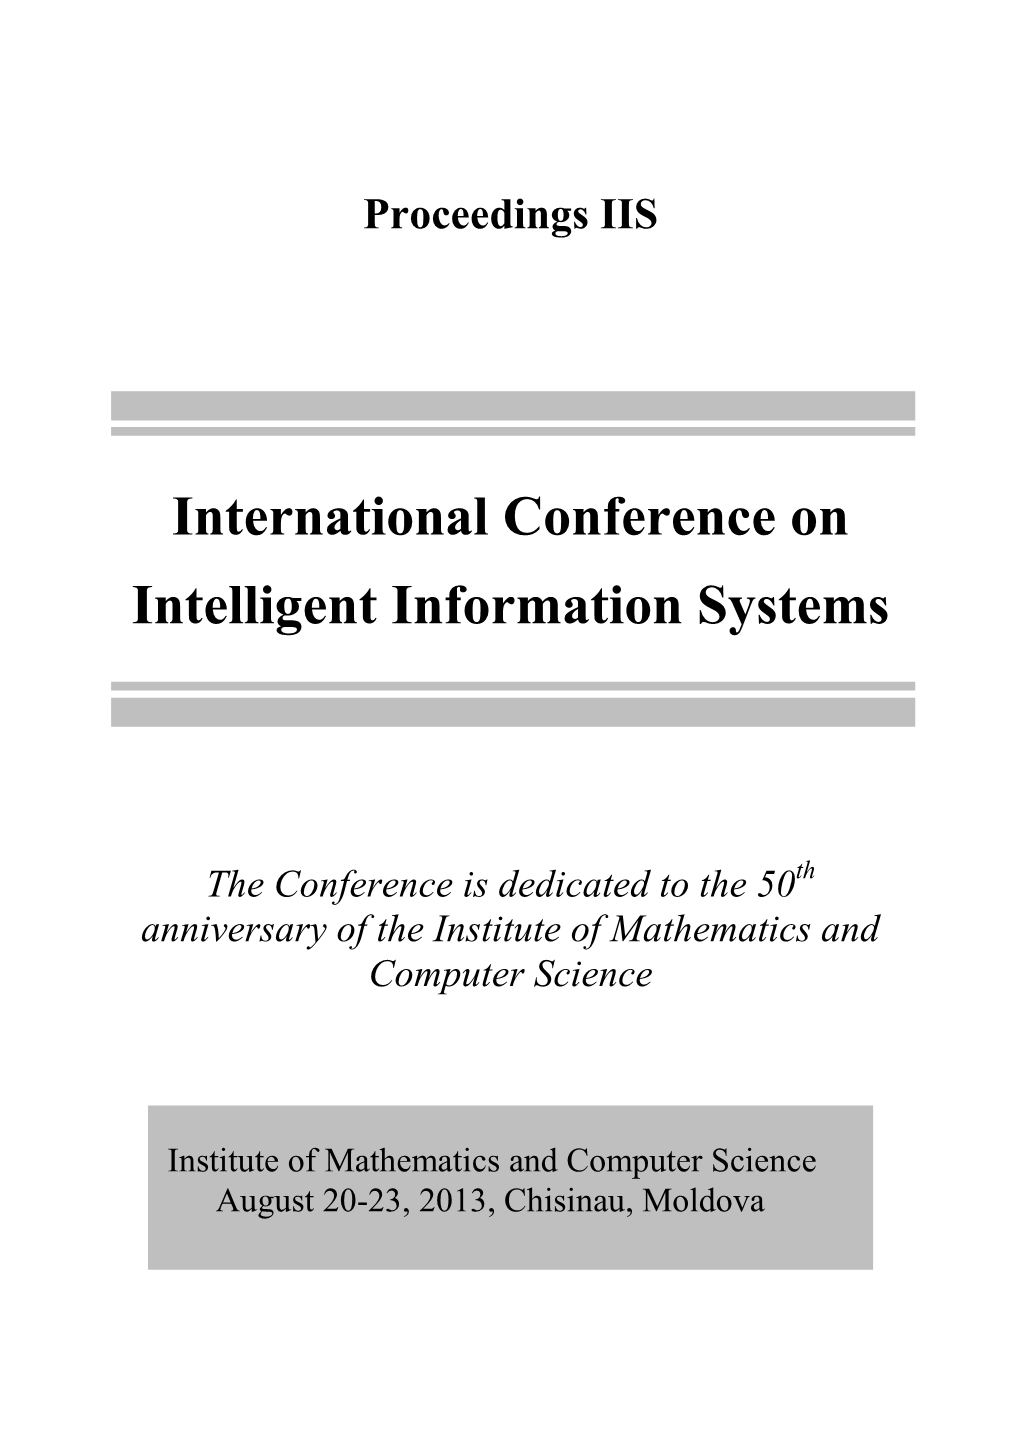 IIS 2013 Proceedings